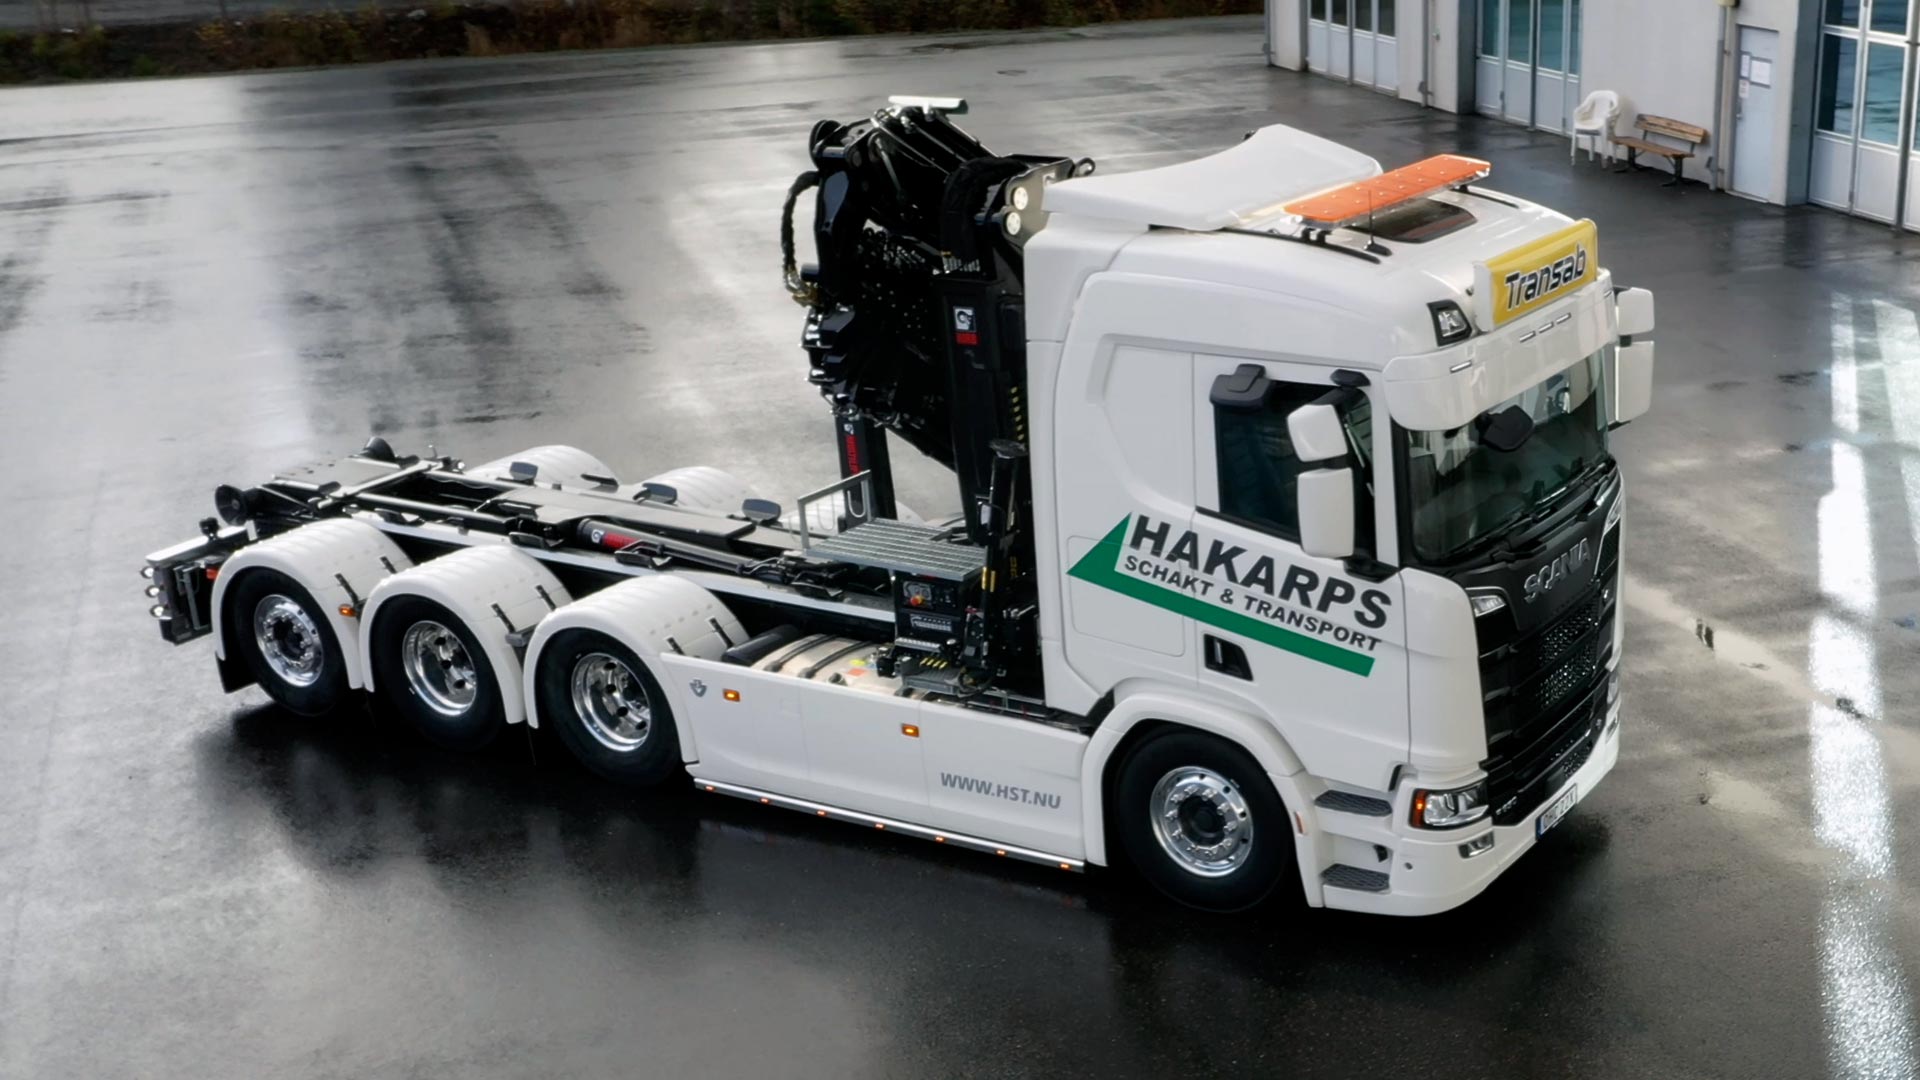 Ny Scanialastbil är levererad till Hakarps Schakt & Transport AB.